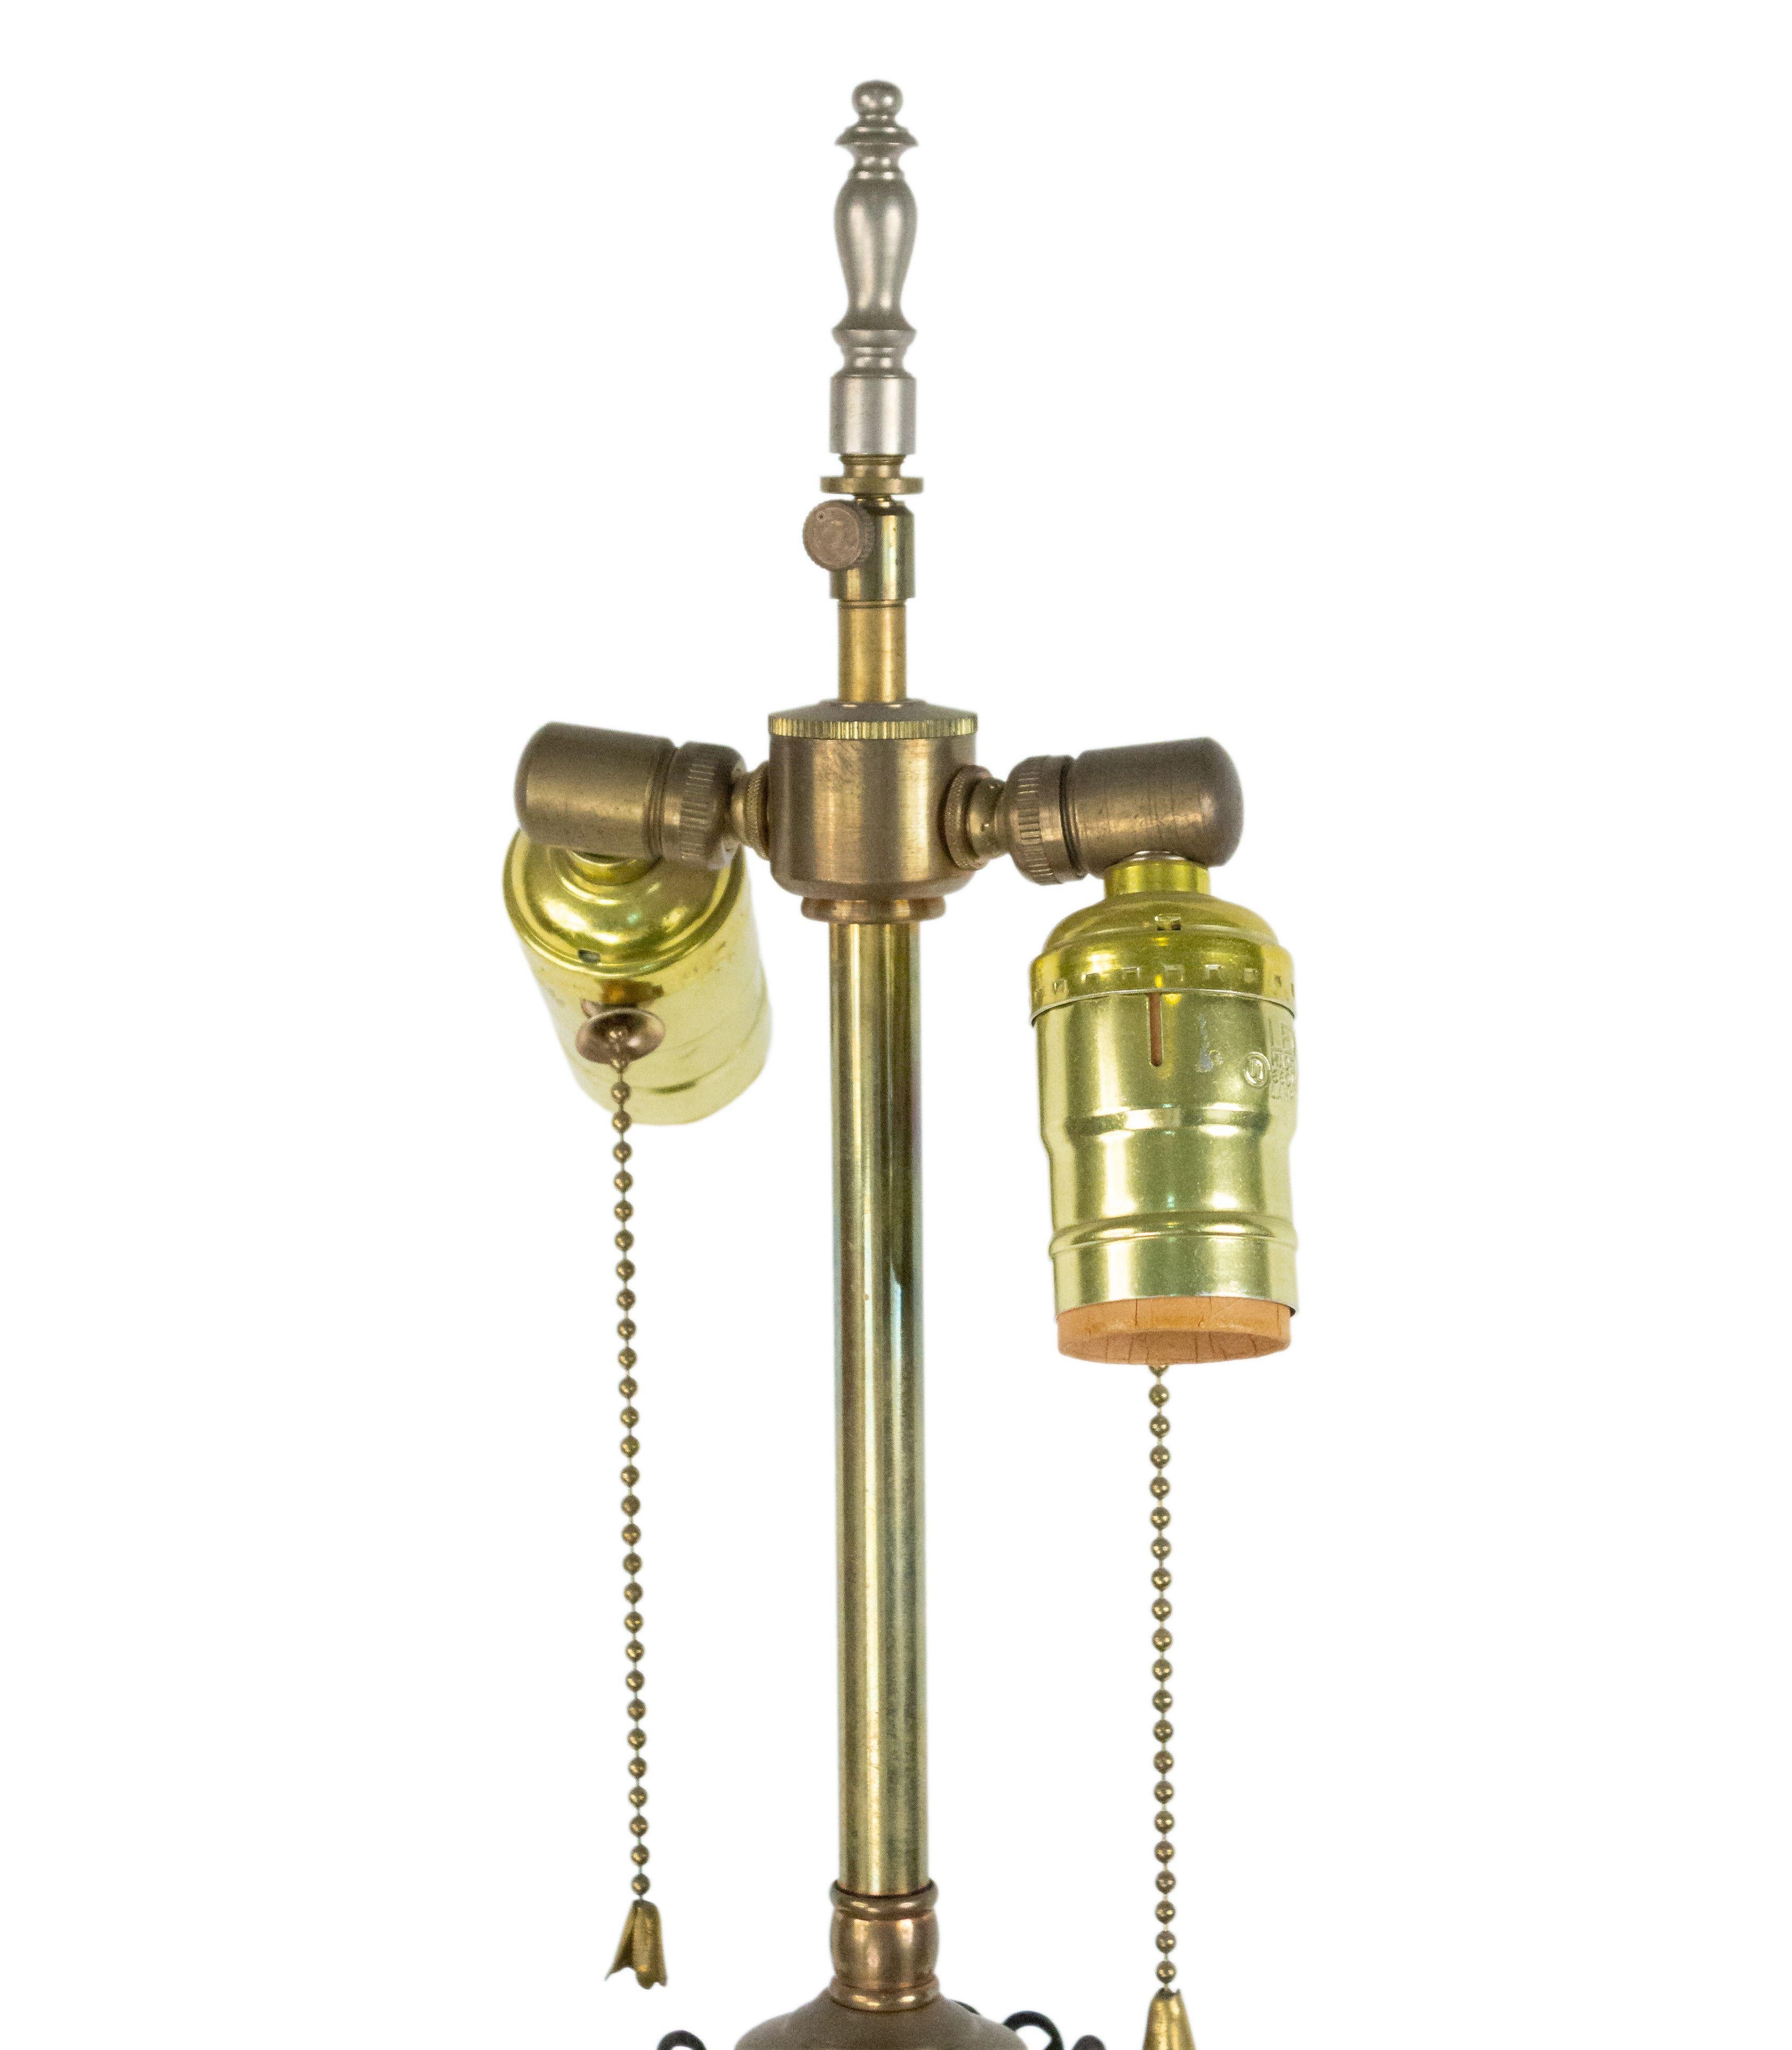 Lampe de table à colonne en métal argenté de style Adam anglais du 19ème siècle, avec un design d'urne et des fontes en cristal taillé.